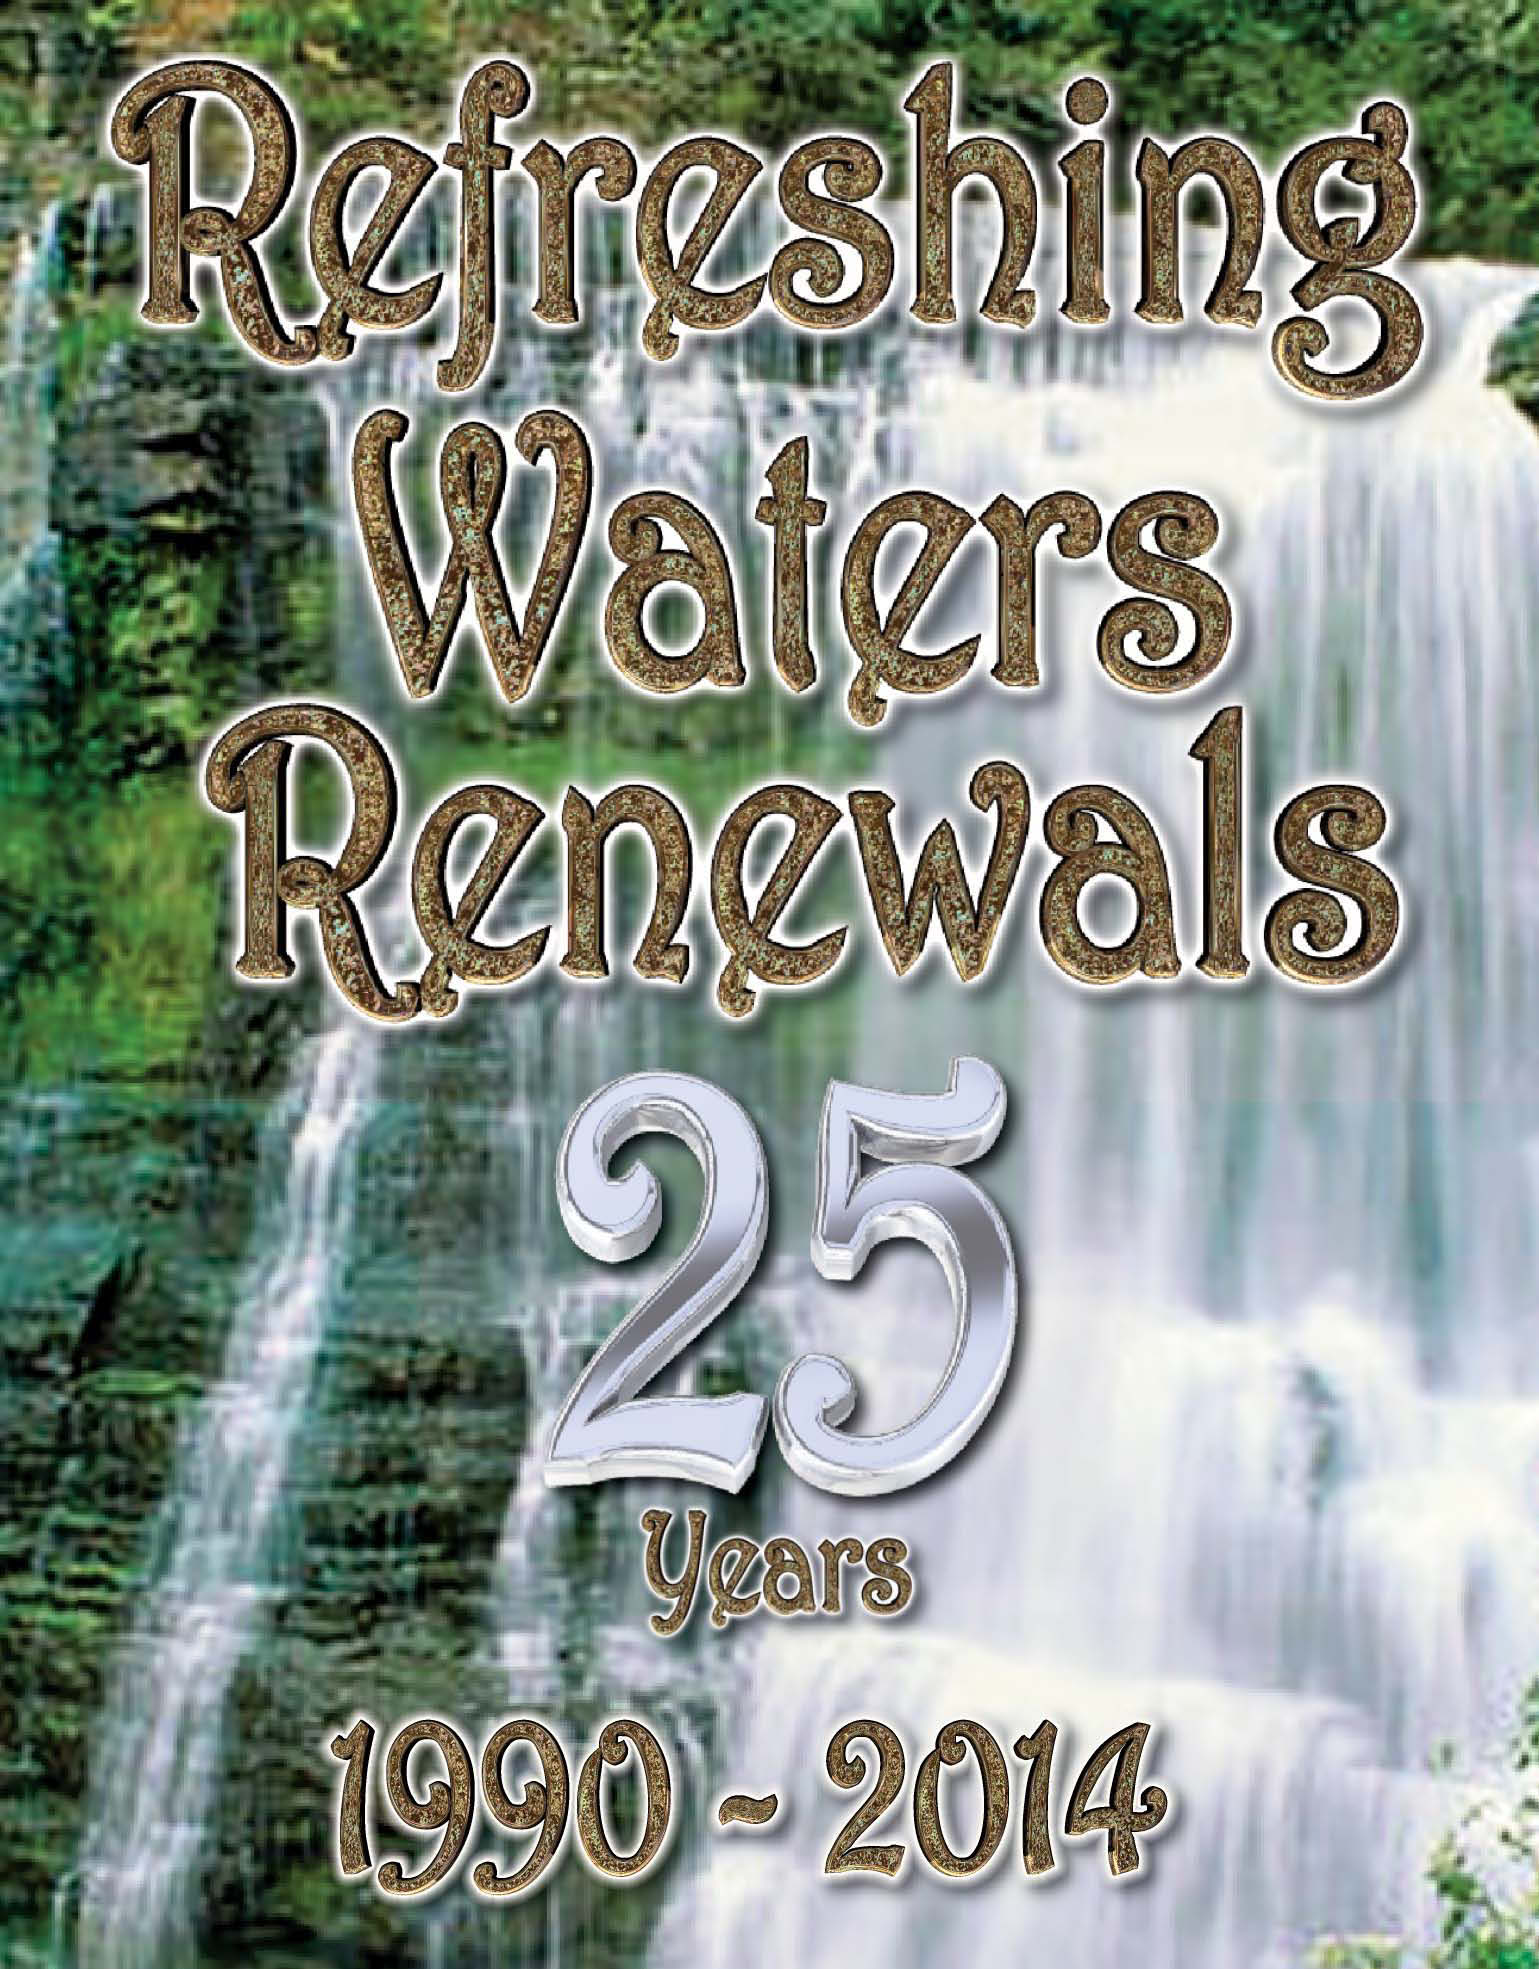 Video Refreshing Waters Renewal 25